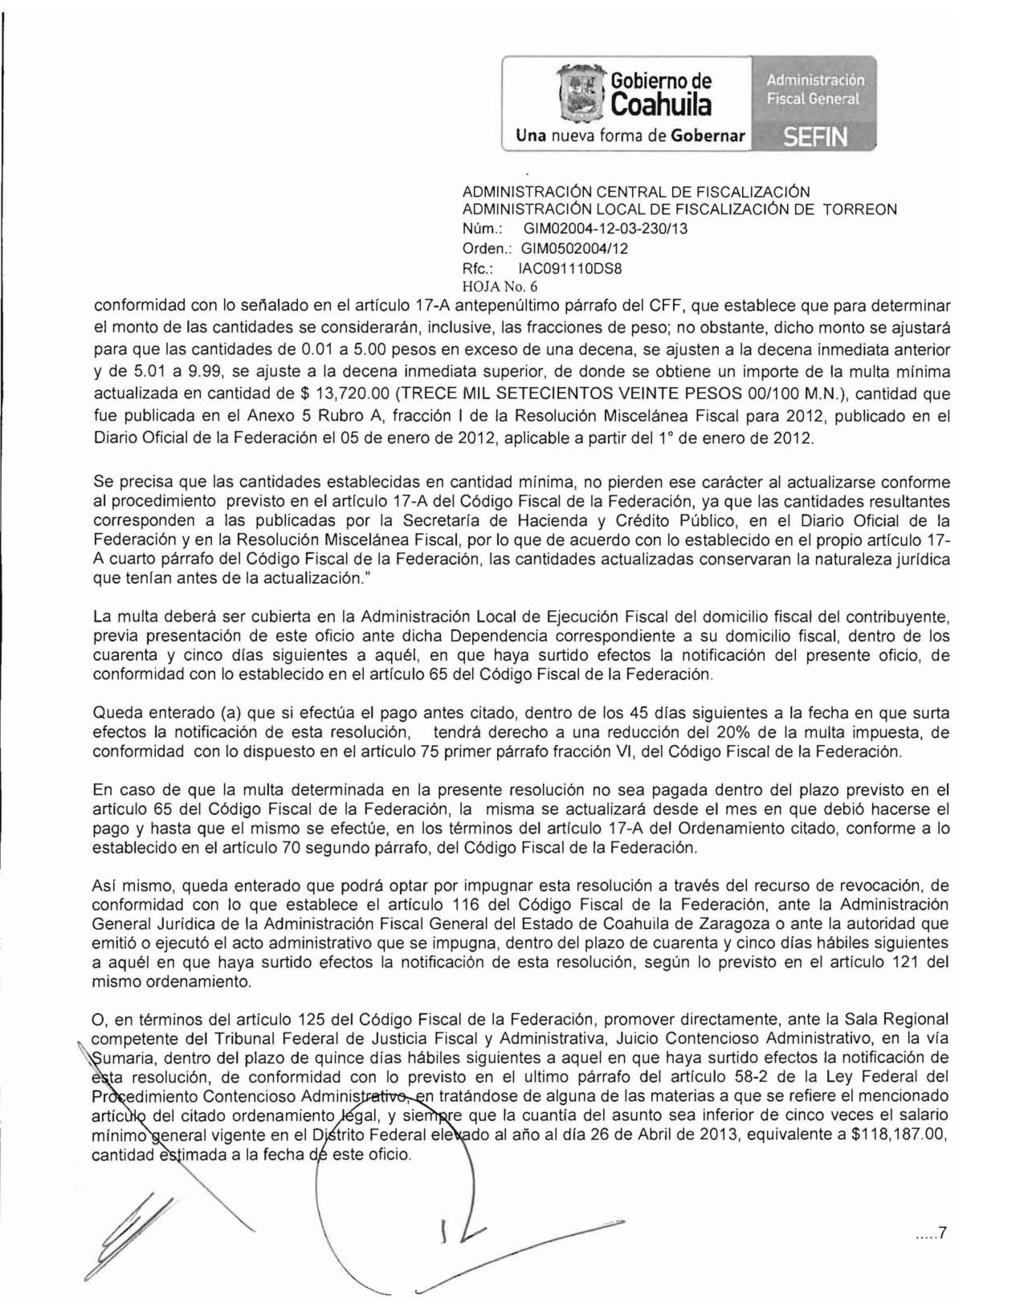 Gobierno de " Coahuila ADMINISTRACiÓN LOCAL DE FISCALIZACiÓN DE TORREON Rte.: IAC091110DS8 HOJA No.